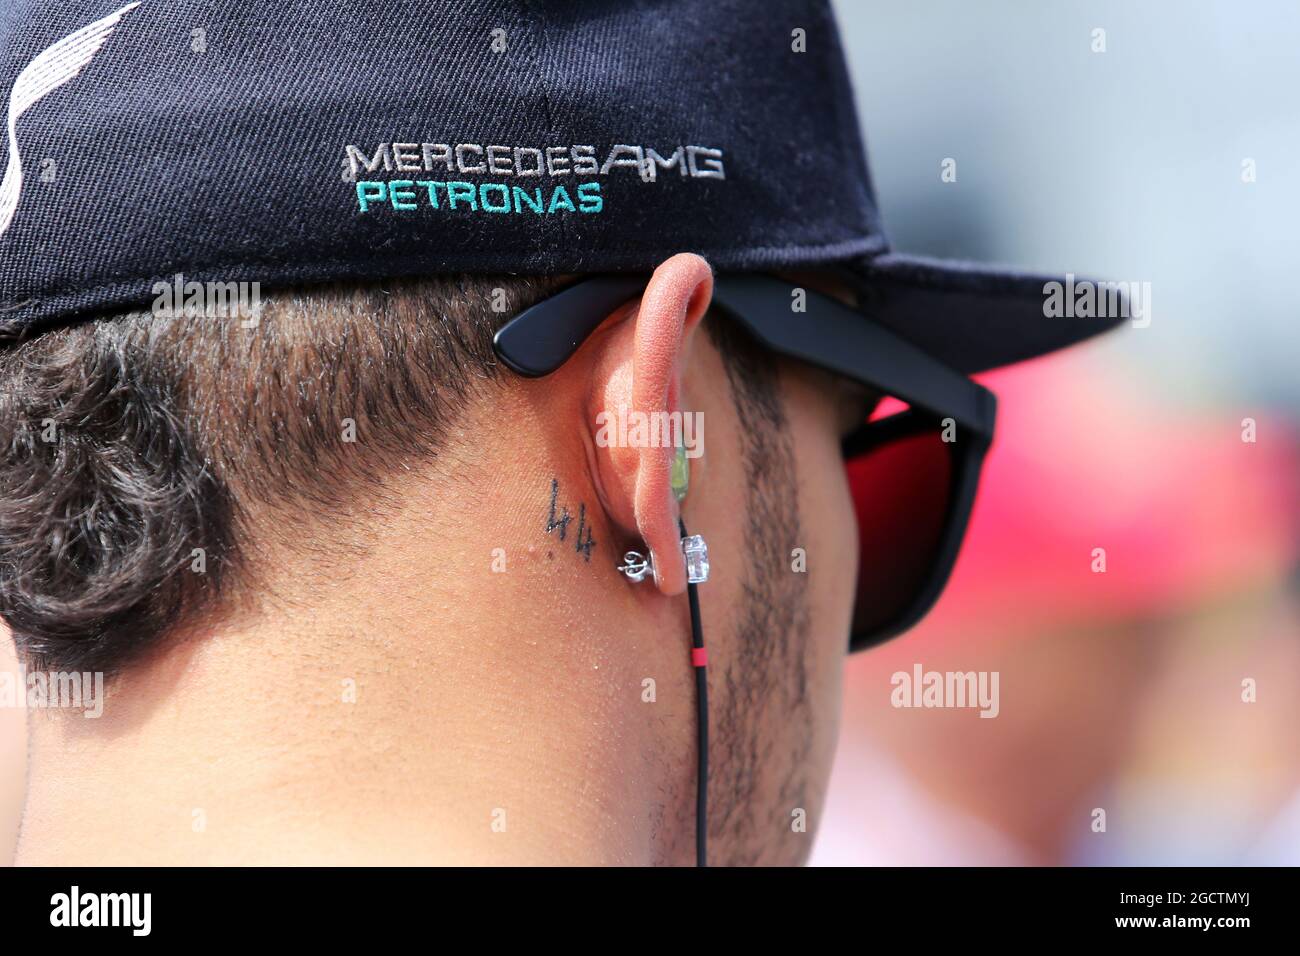 Lewis Hamilton (GBR) Mercedes AMG F1 avec son tatouage de 44. Grand Prix d'Autriche, dimanche 22 juin 2014. Spielberg, Autriche. Banque D'Images